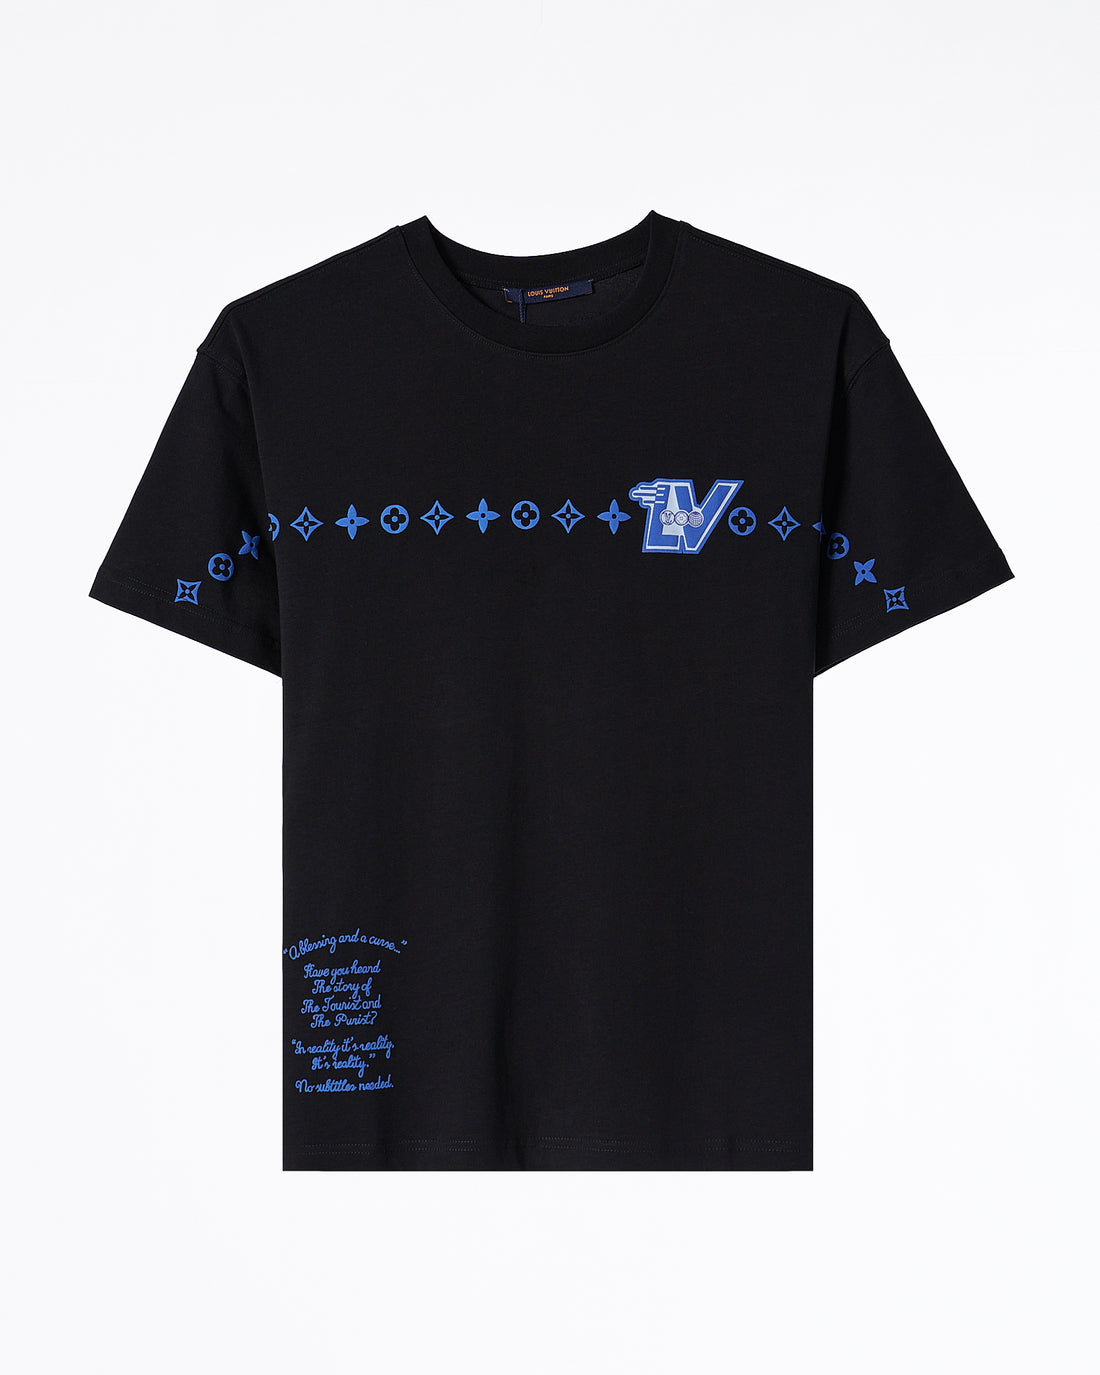 LV 로고 프린트 남성 티셔츠 49.90